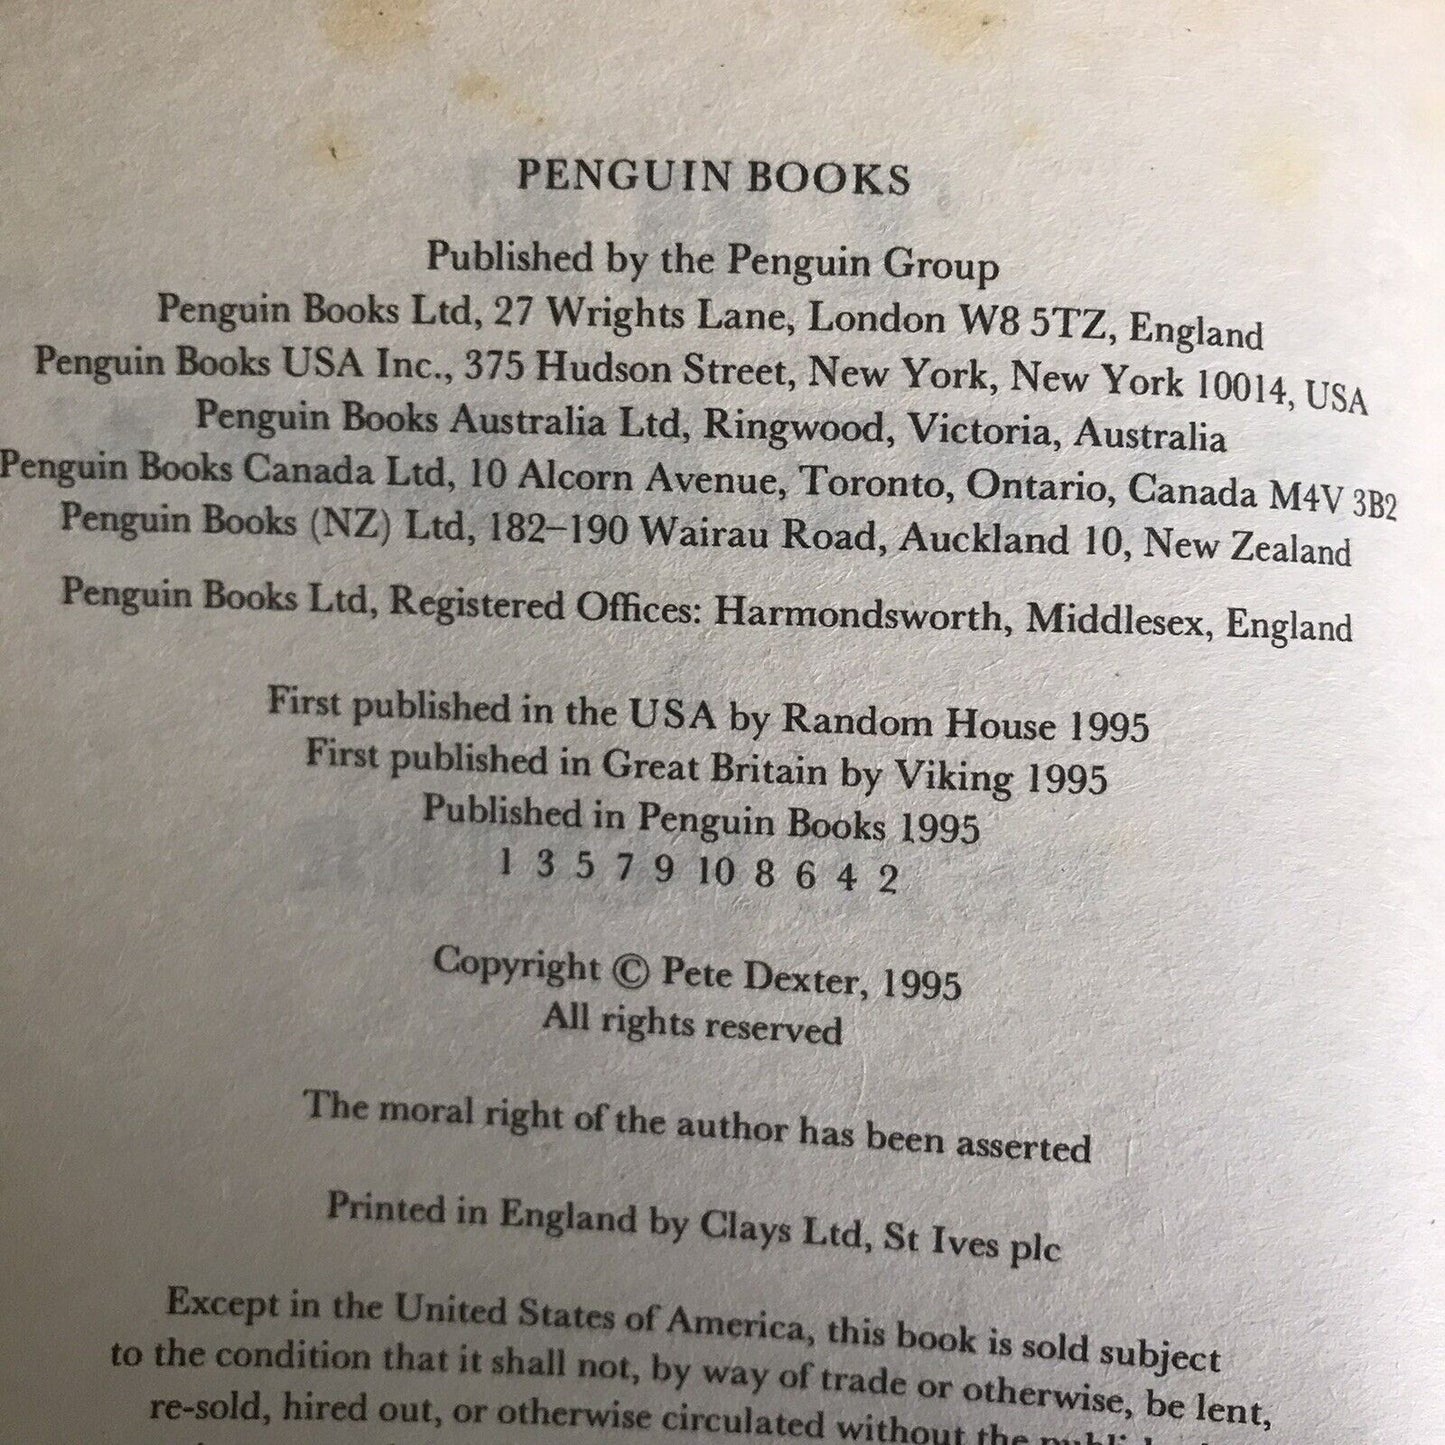 The Paperboy - Pete Dexter (Paperback, 1995) Penguin  Publisher